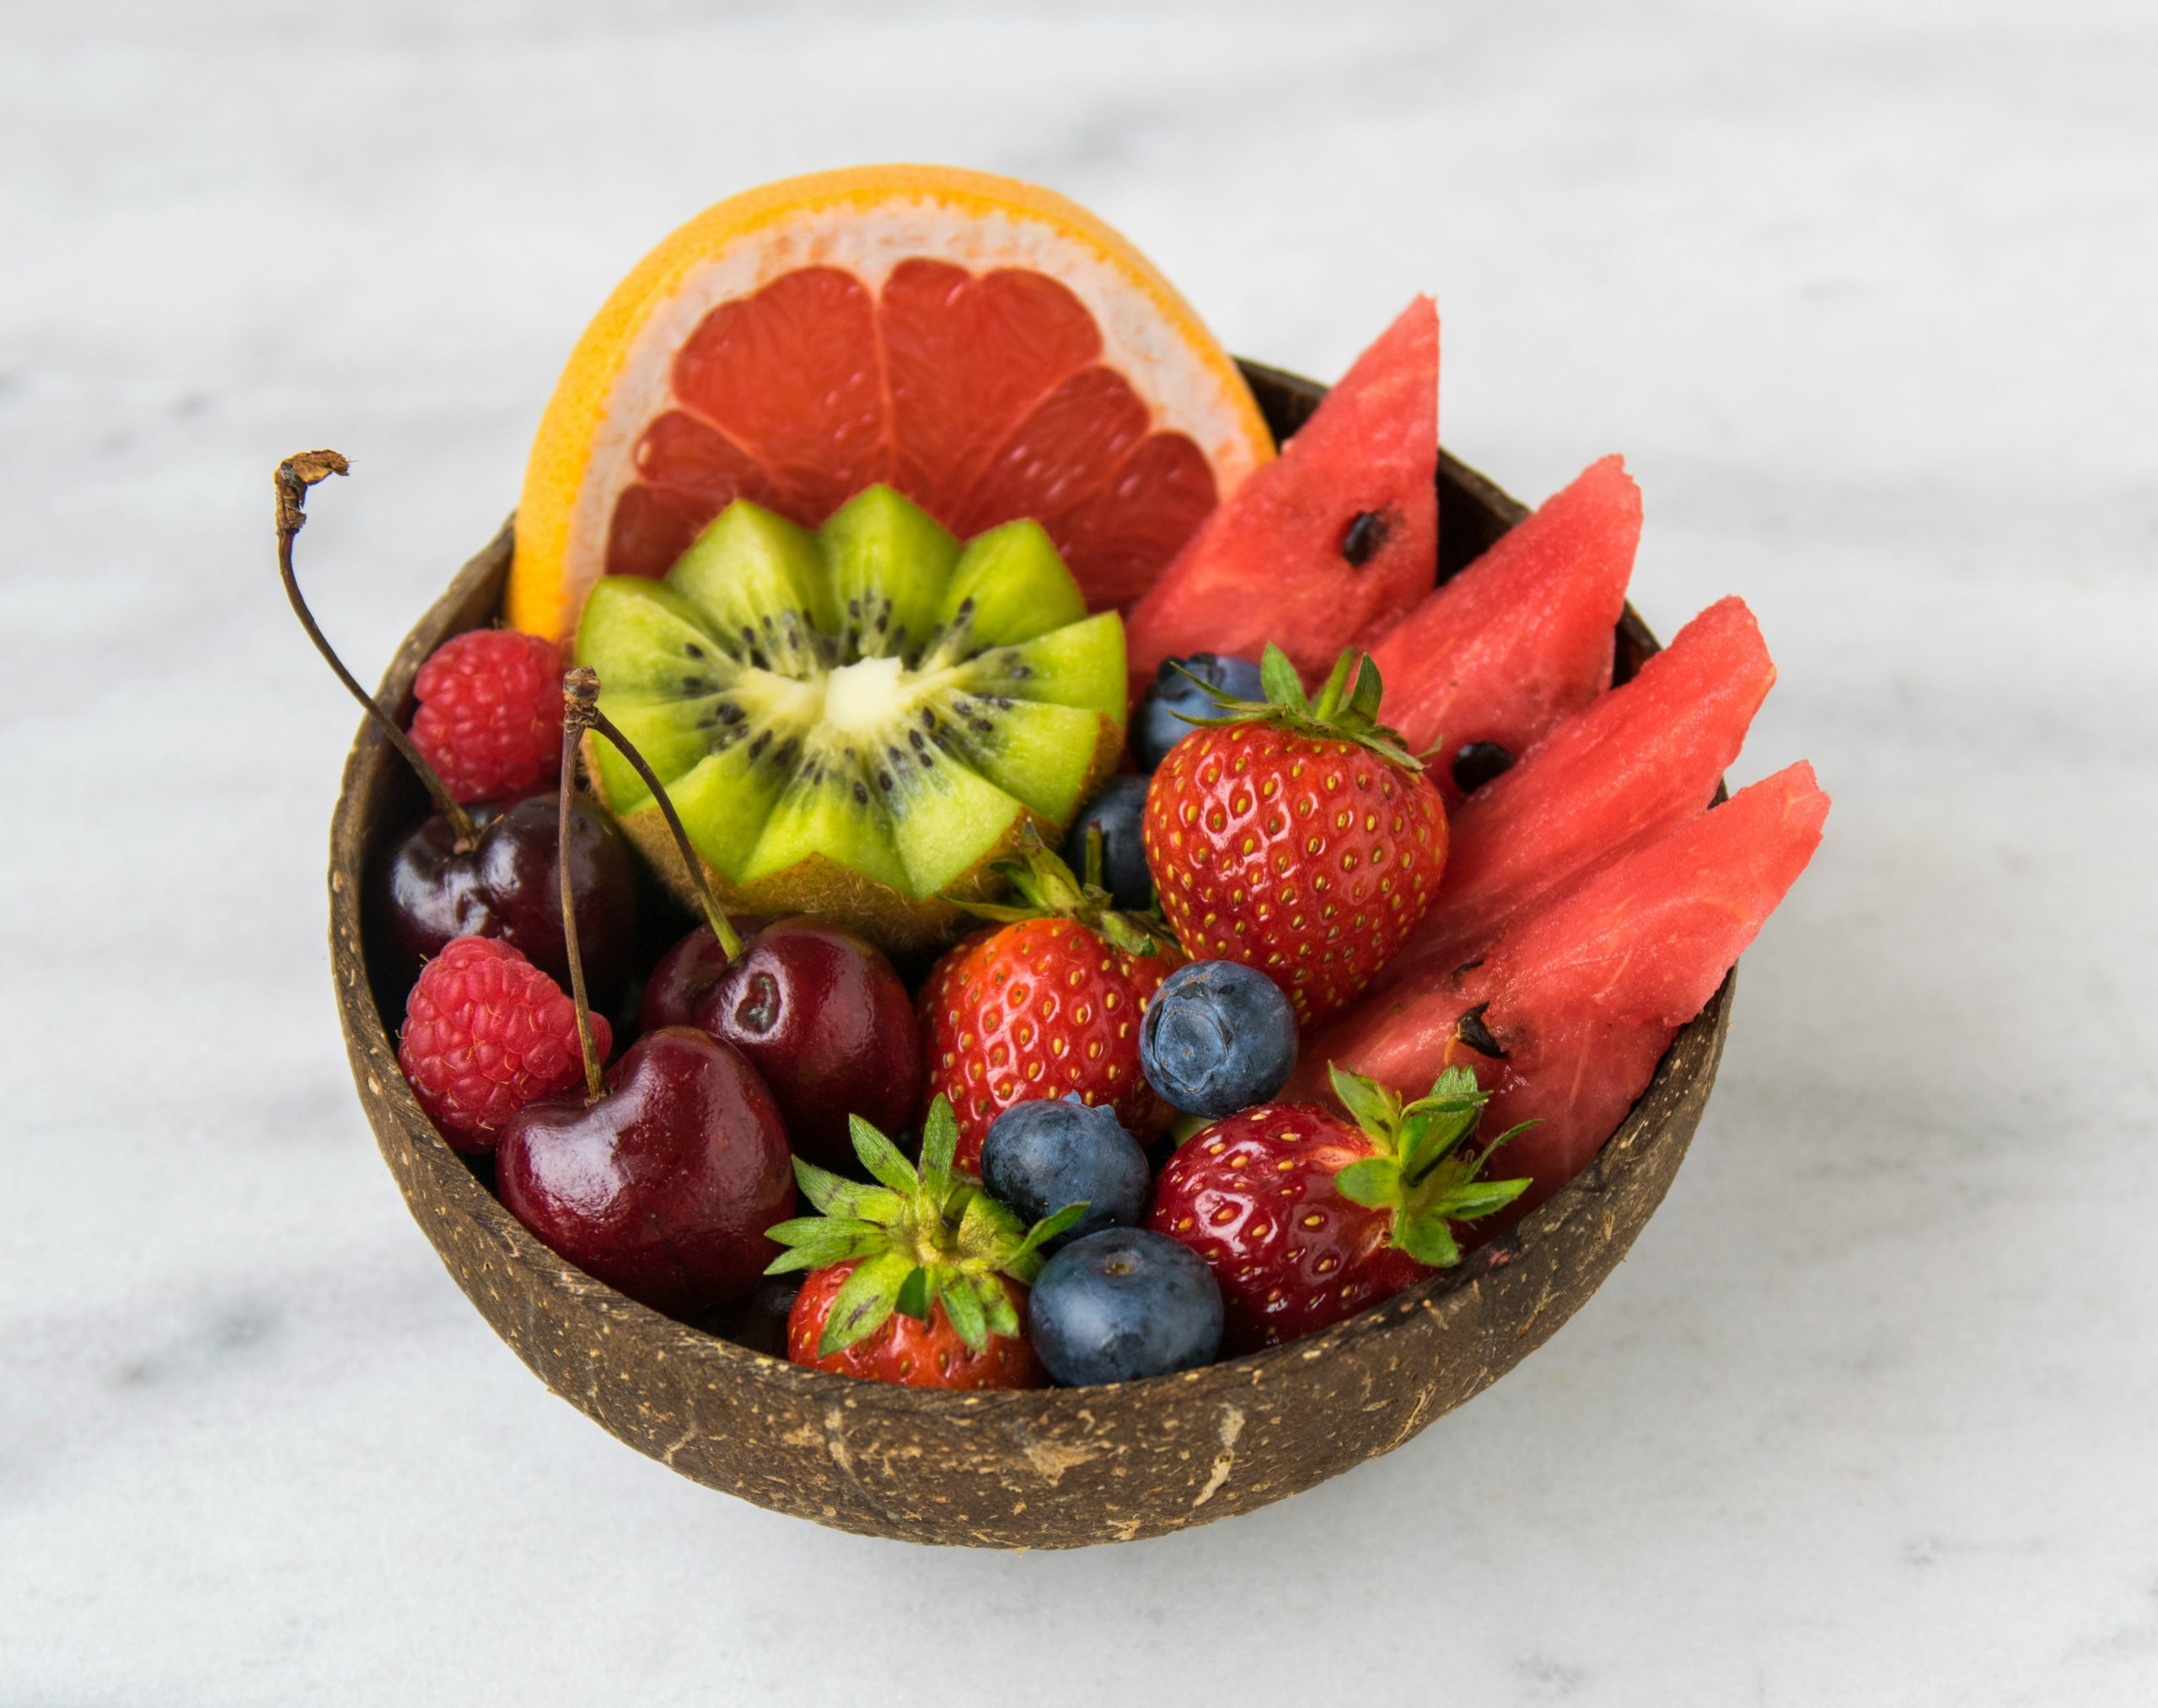 το νο1 φρούτο που μπορεί να σας βοηθήσει στην απώλεια βάρους, σύμφωνα με διαιτολόγο